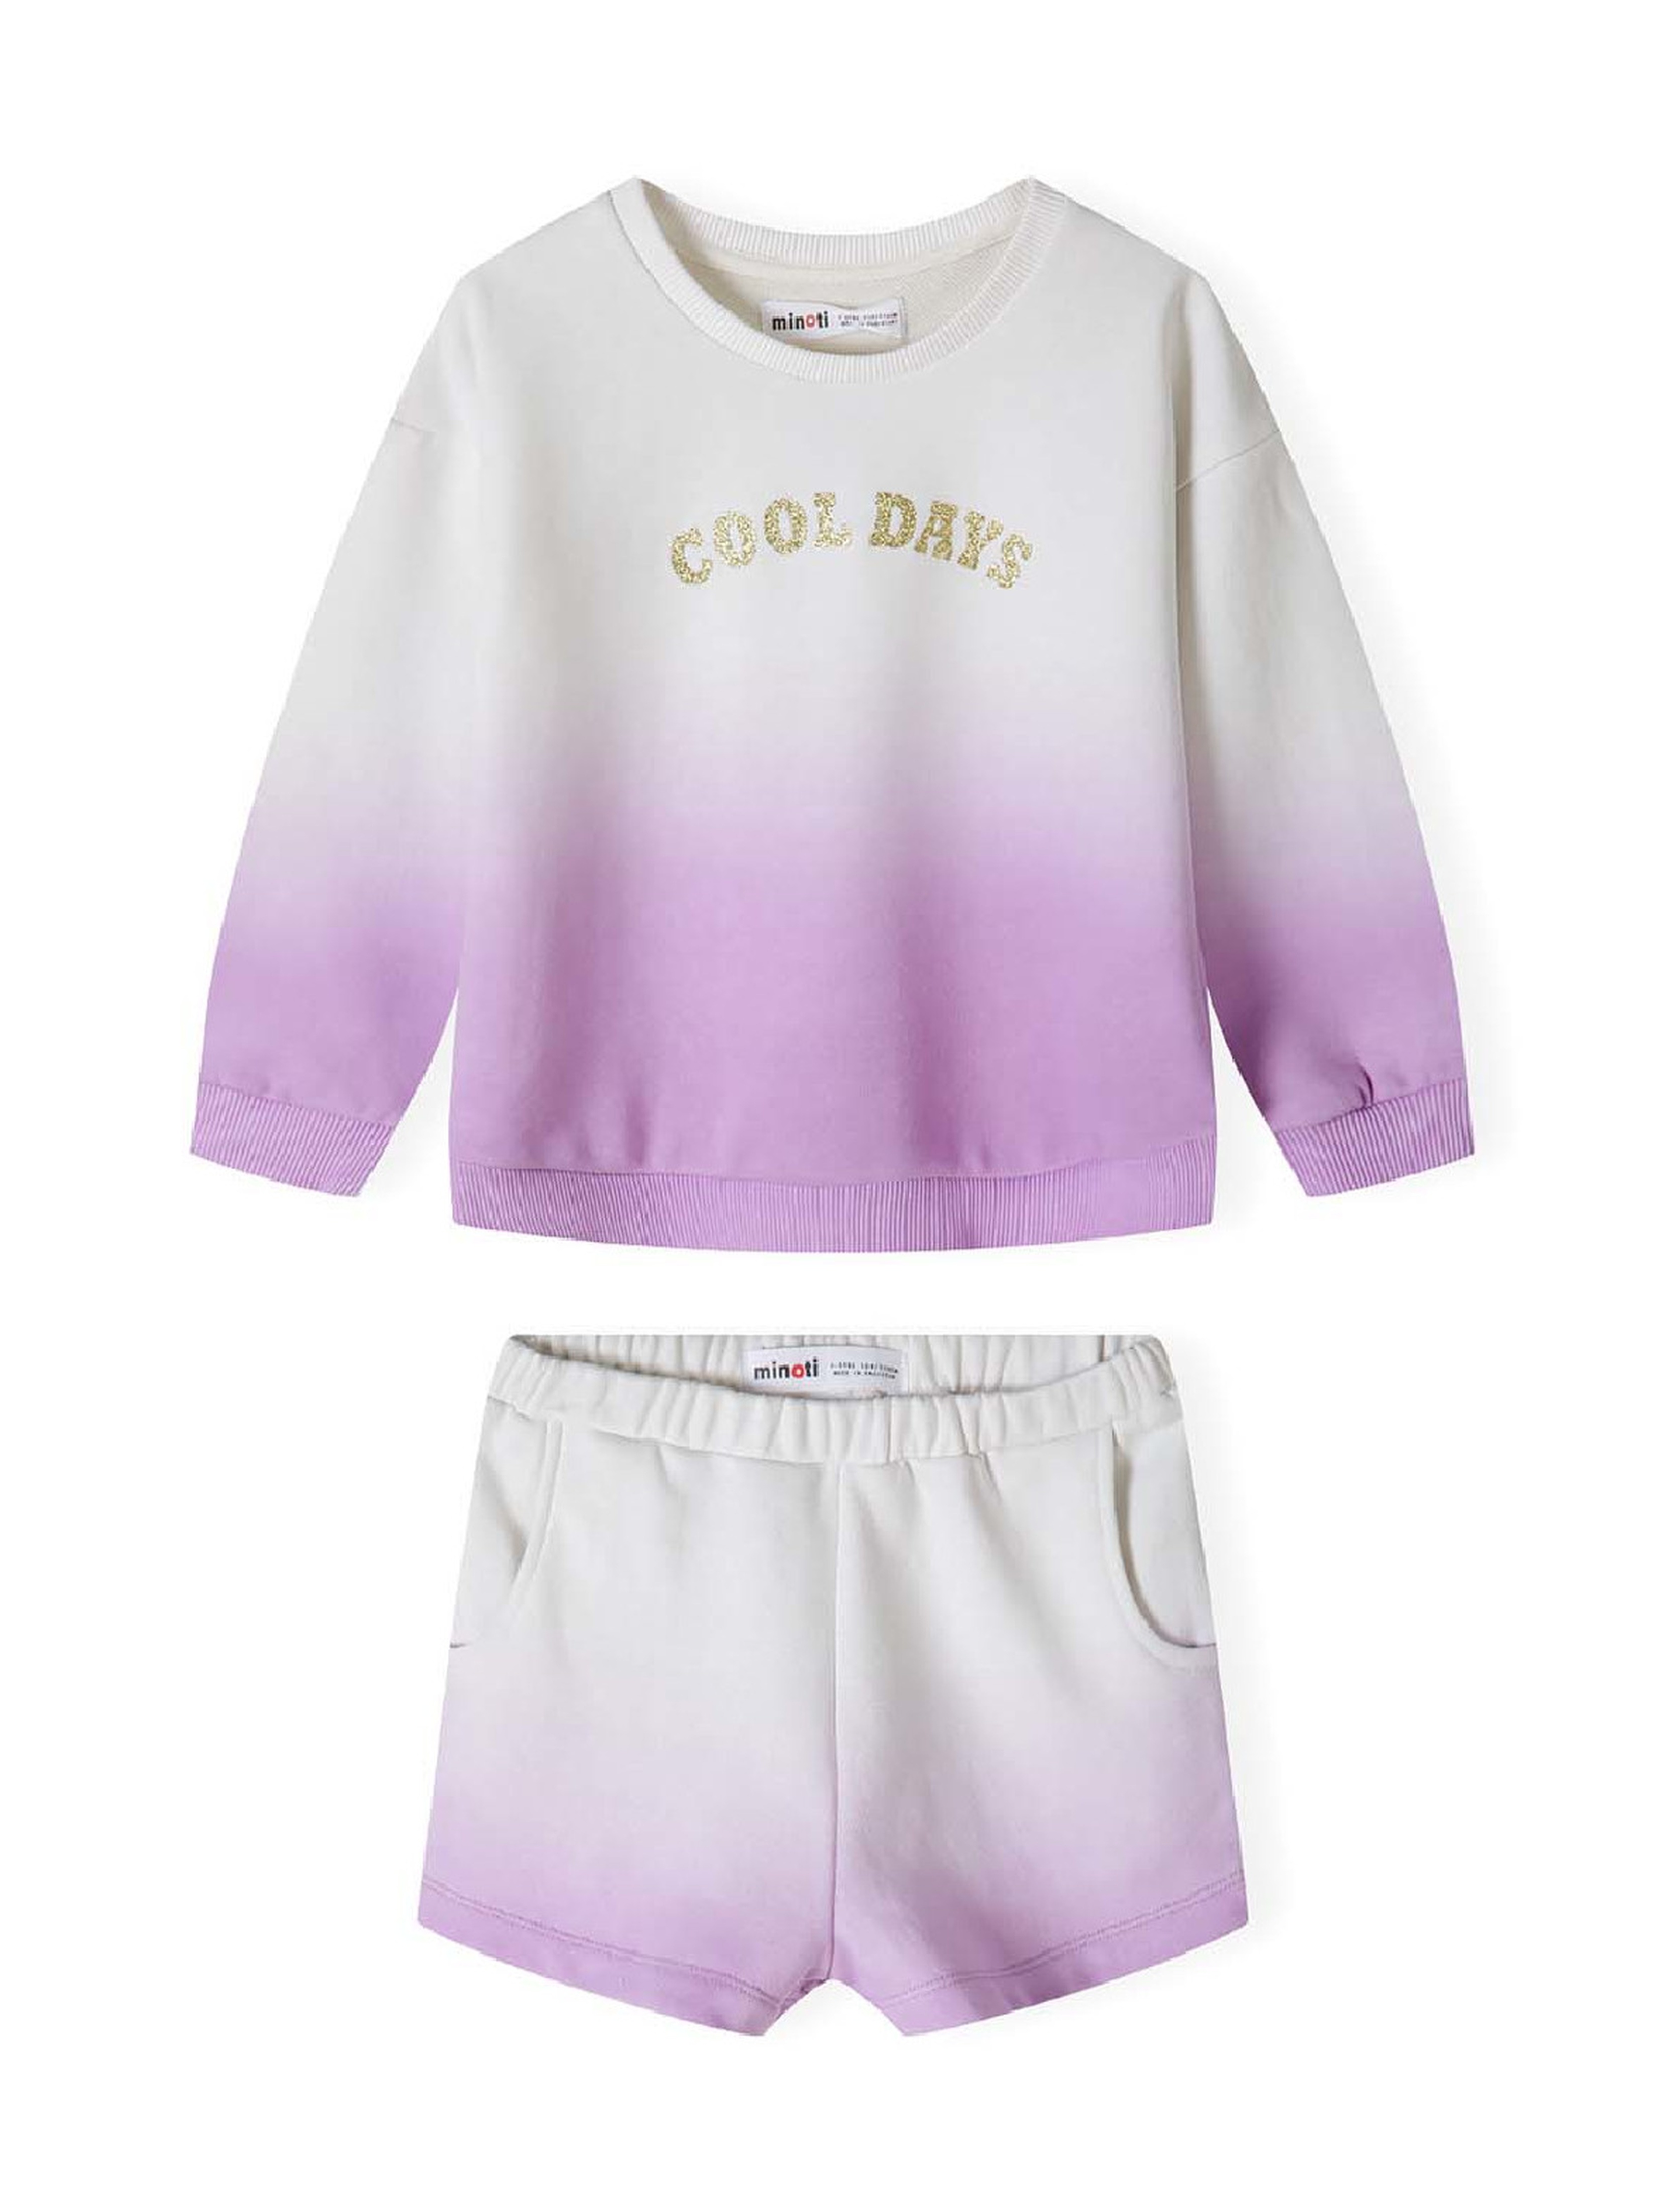 Komplet dziewczęcy biało-fioletowy- bluza i szorty Cool days